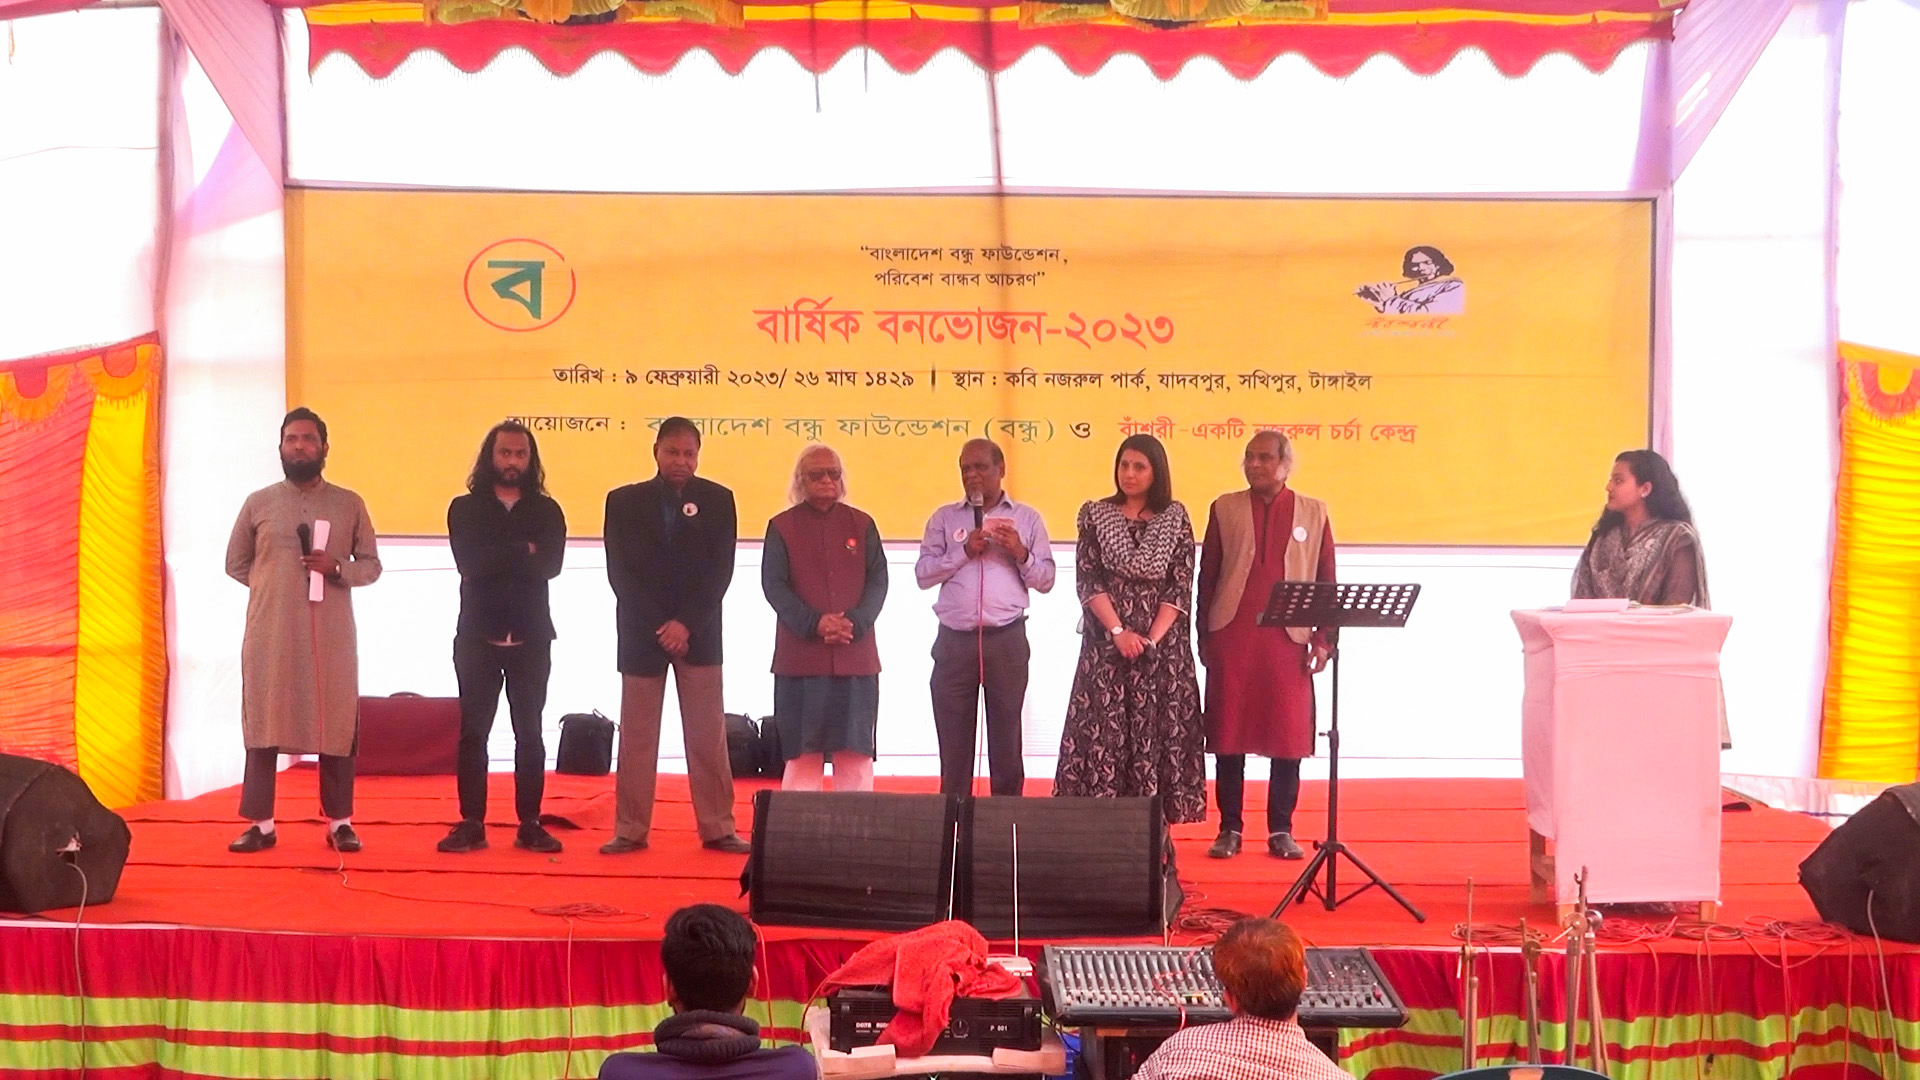 Annual Picnic-2023 of BONDHU and Bashori held at Jadavpur